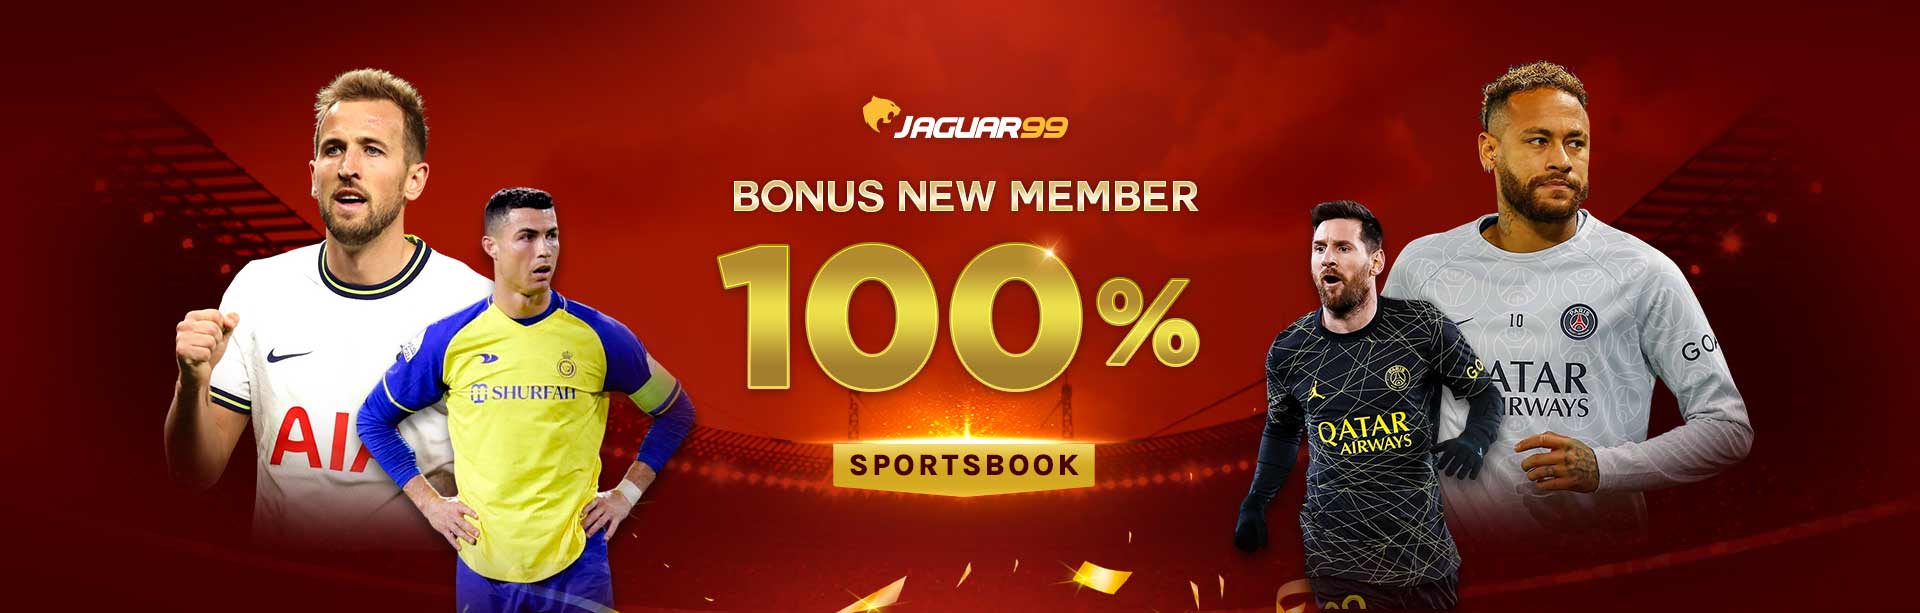 Jaguar99 Bonus New Member 100% Sportsbook